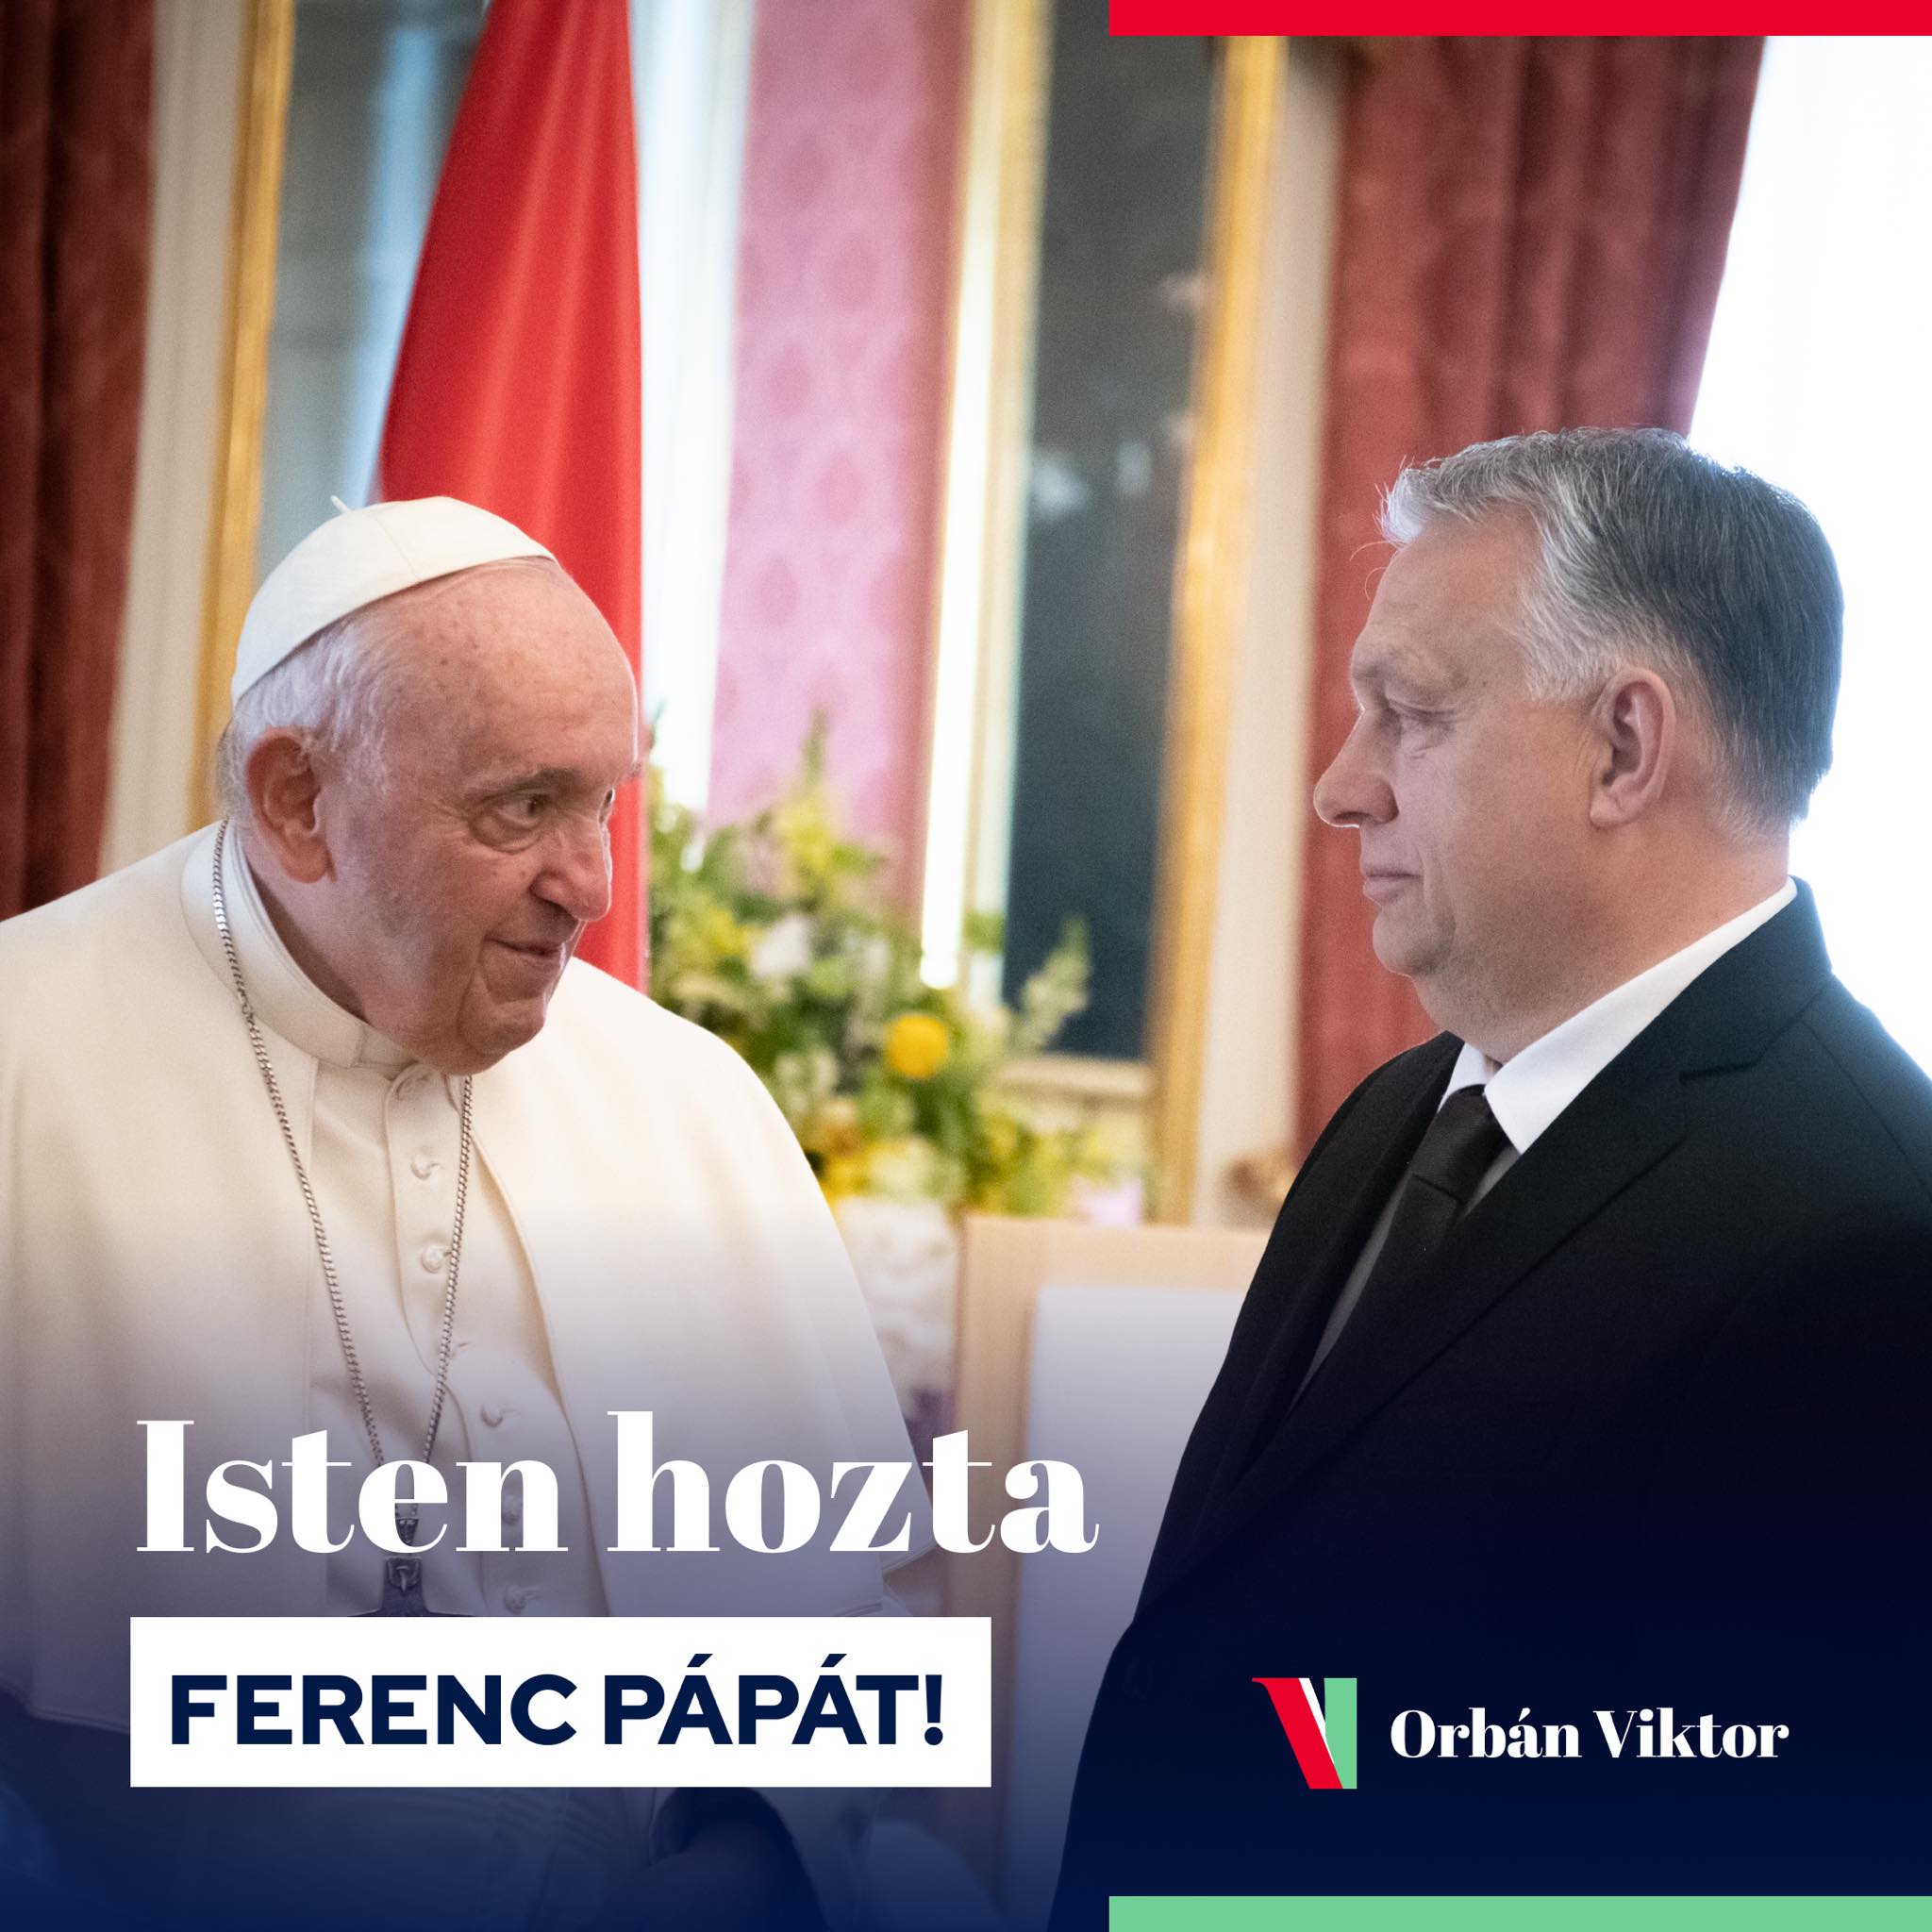 Ο Πάπας Φραγκίσκος απευθύνει έκκληση στην Ουγγαρία: «πολεμικός νηπιδισμός»